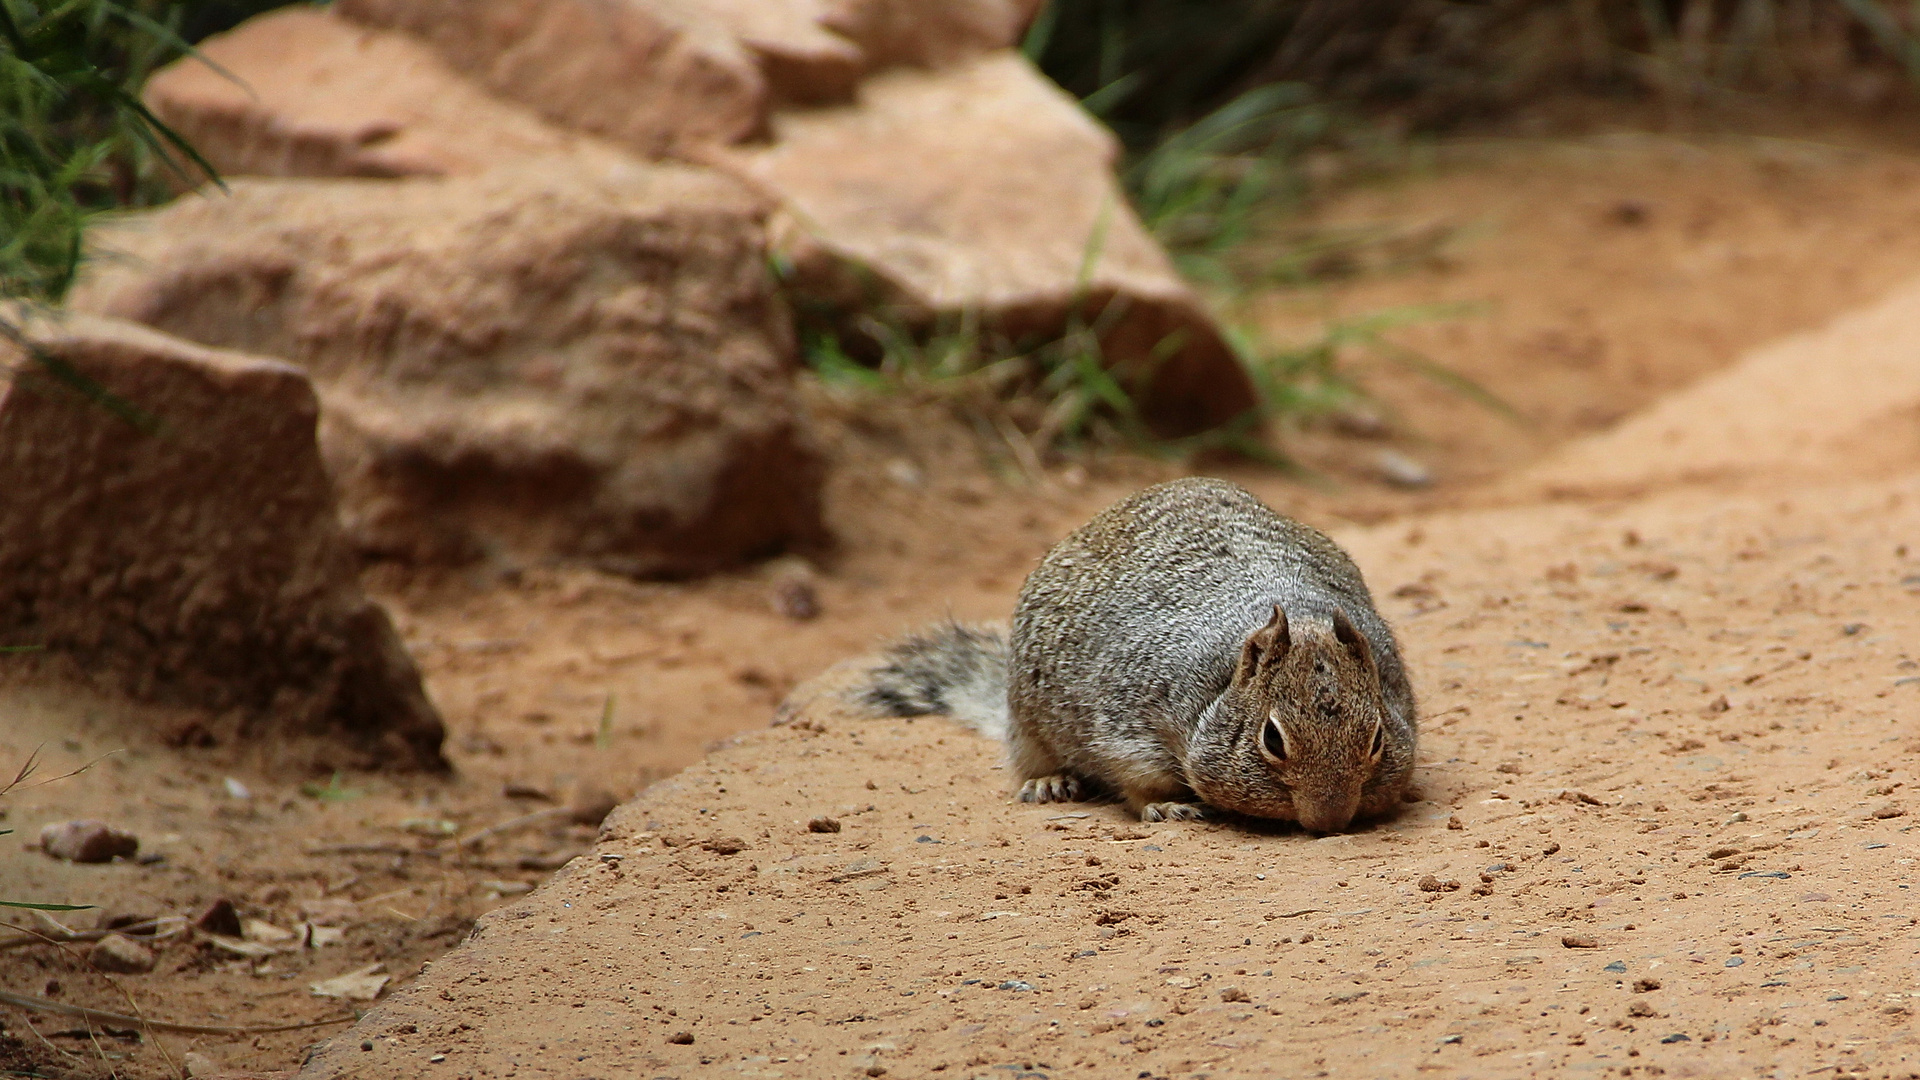 Rock squirrel